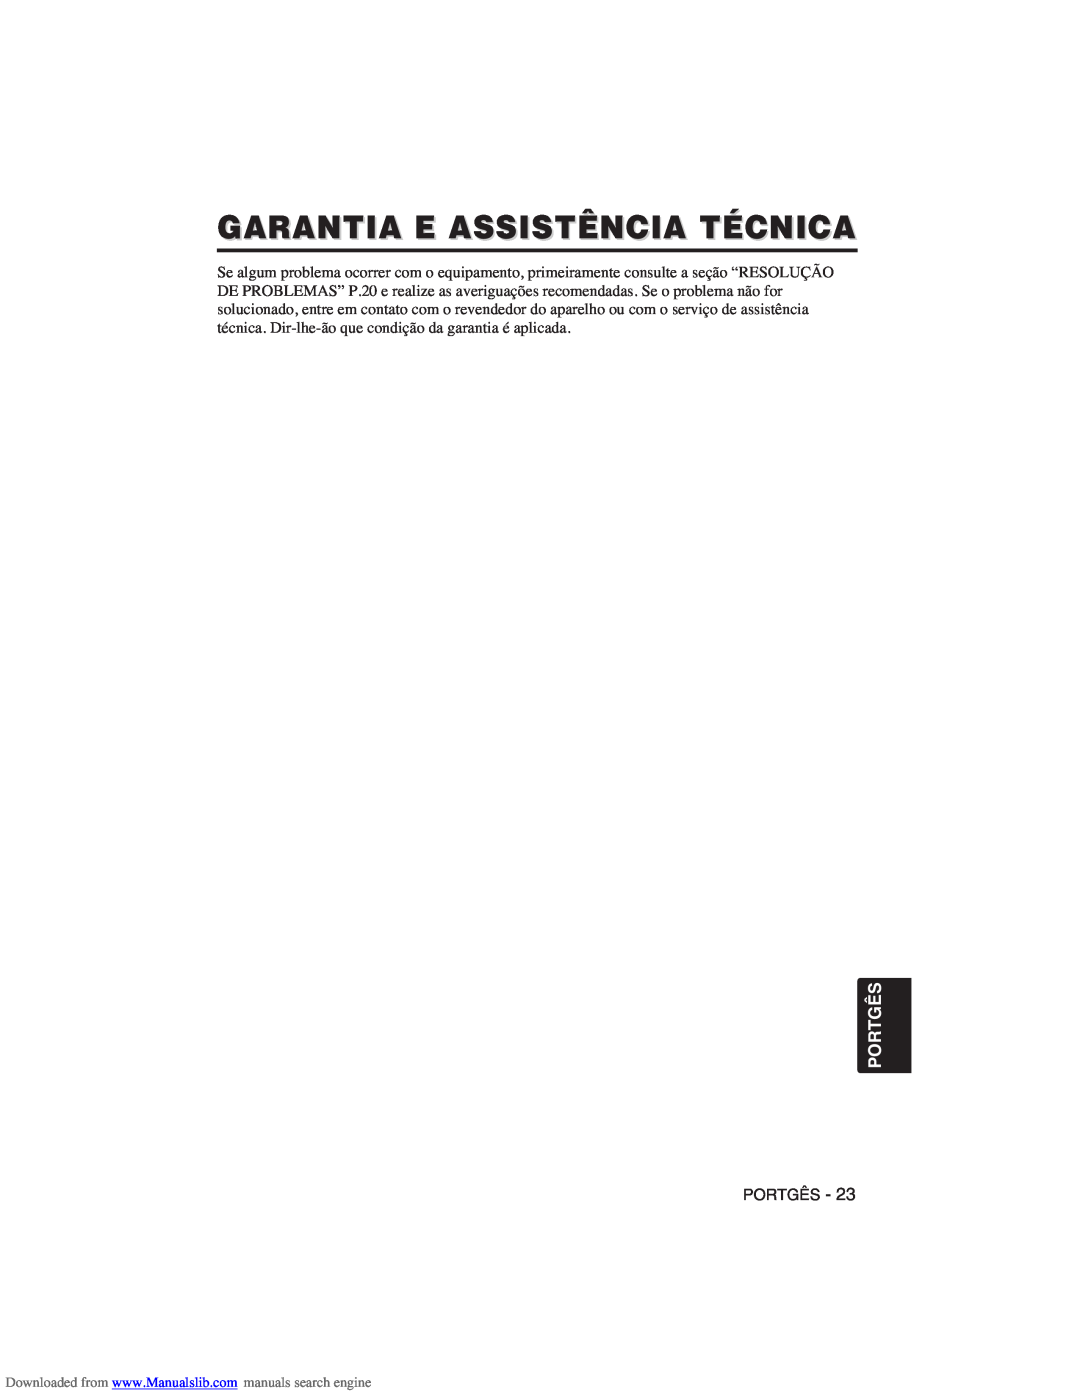 Hitachi CP-X275W user manual Garantia E Assistência Técnica, Portgês 